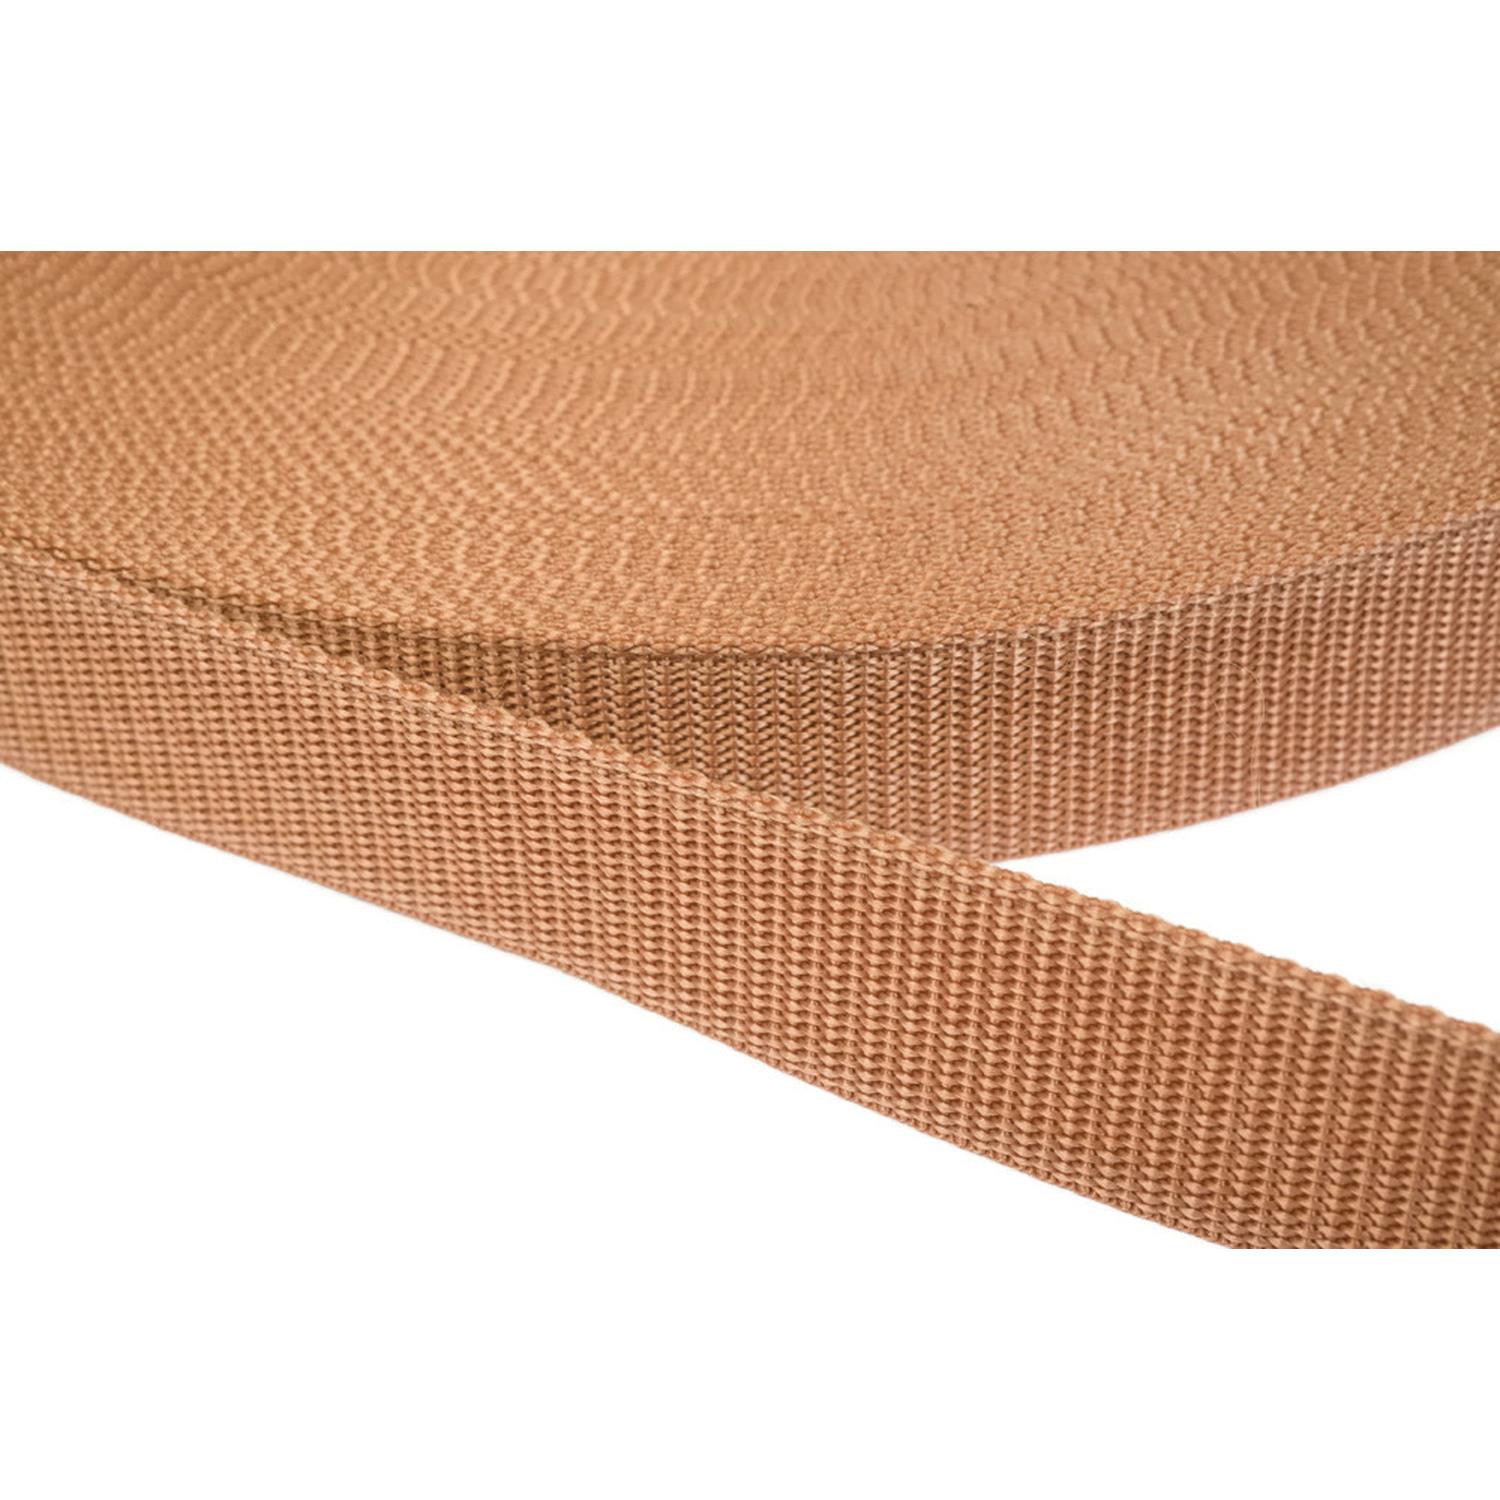 Gurtband 50mm breit aus Polypropylen in 41 Farben 06 - hellbraun 50 Meter